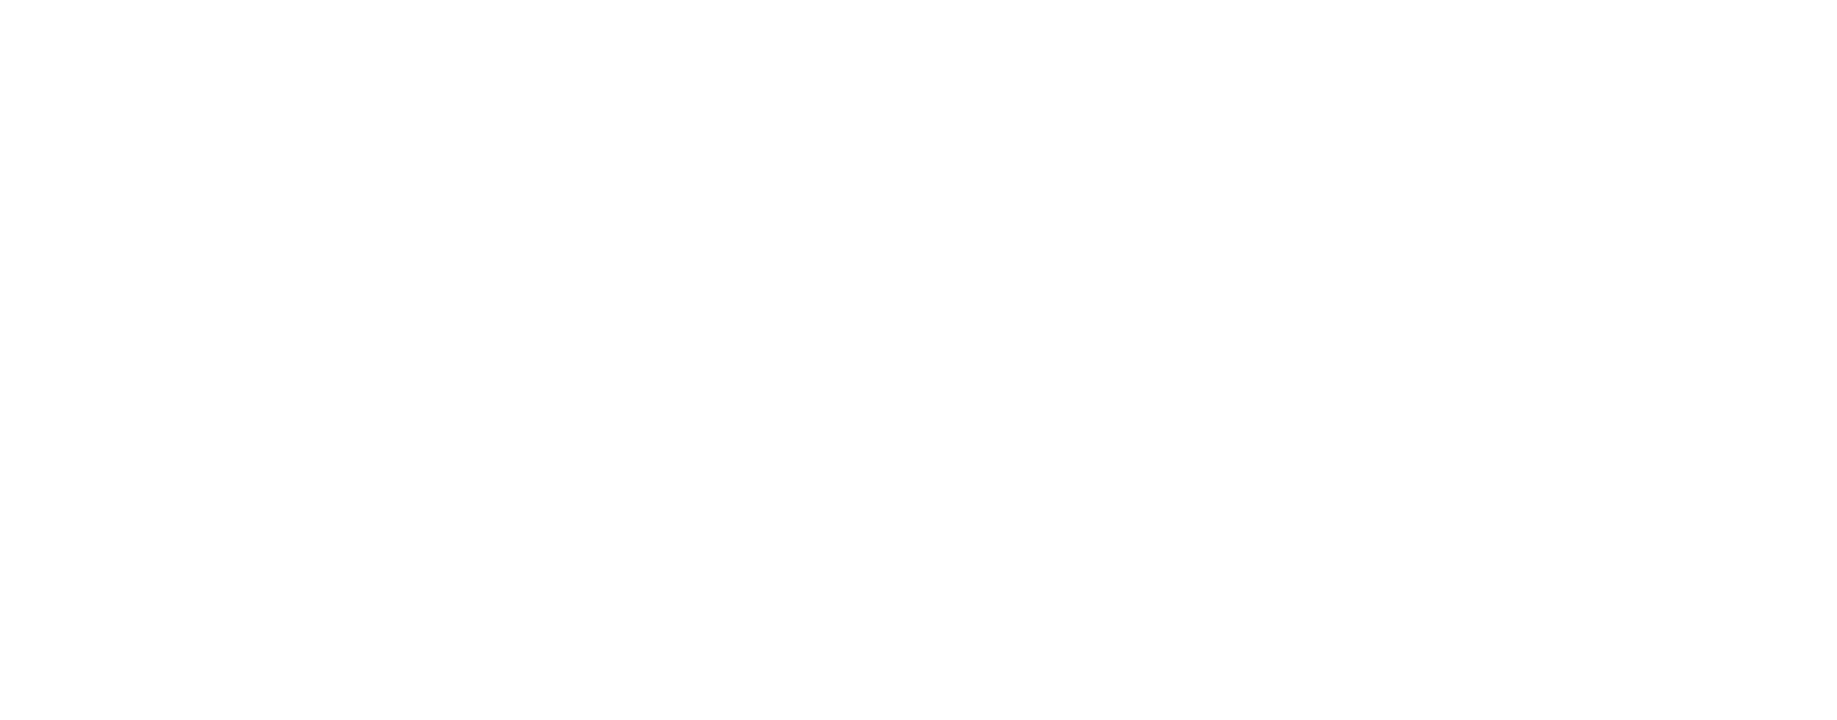 Shiran Siboni